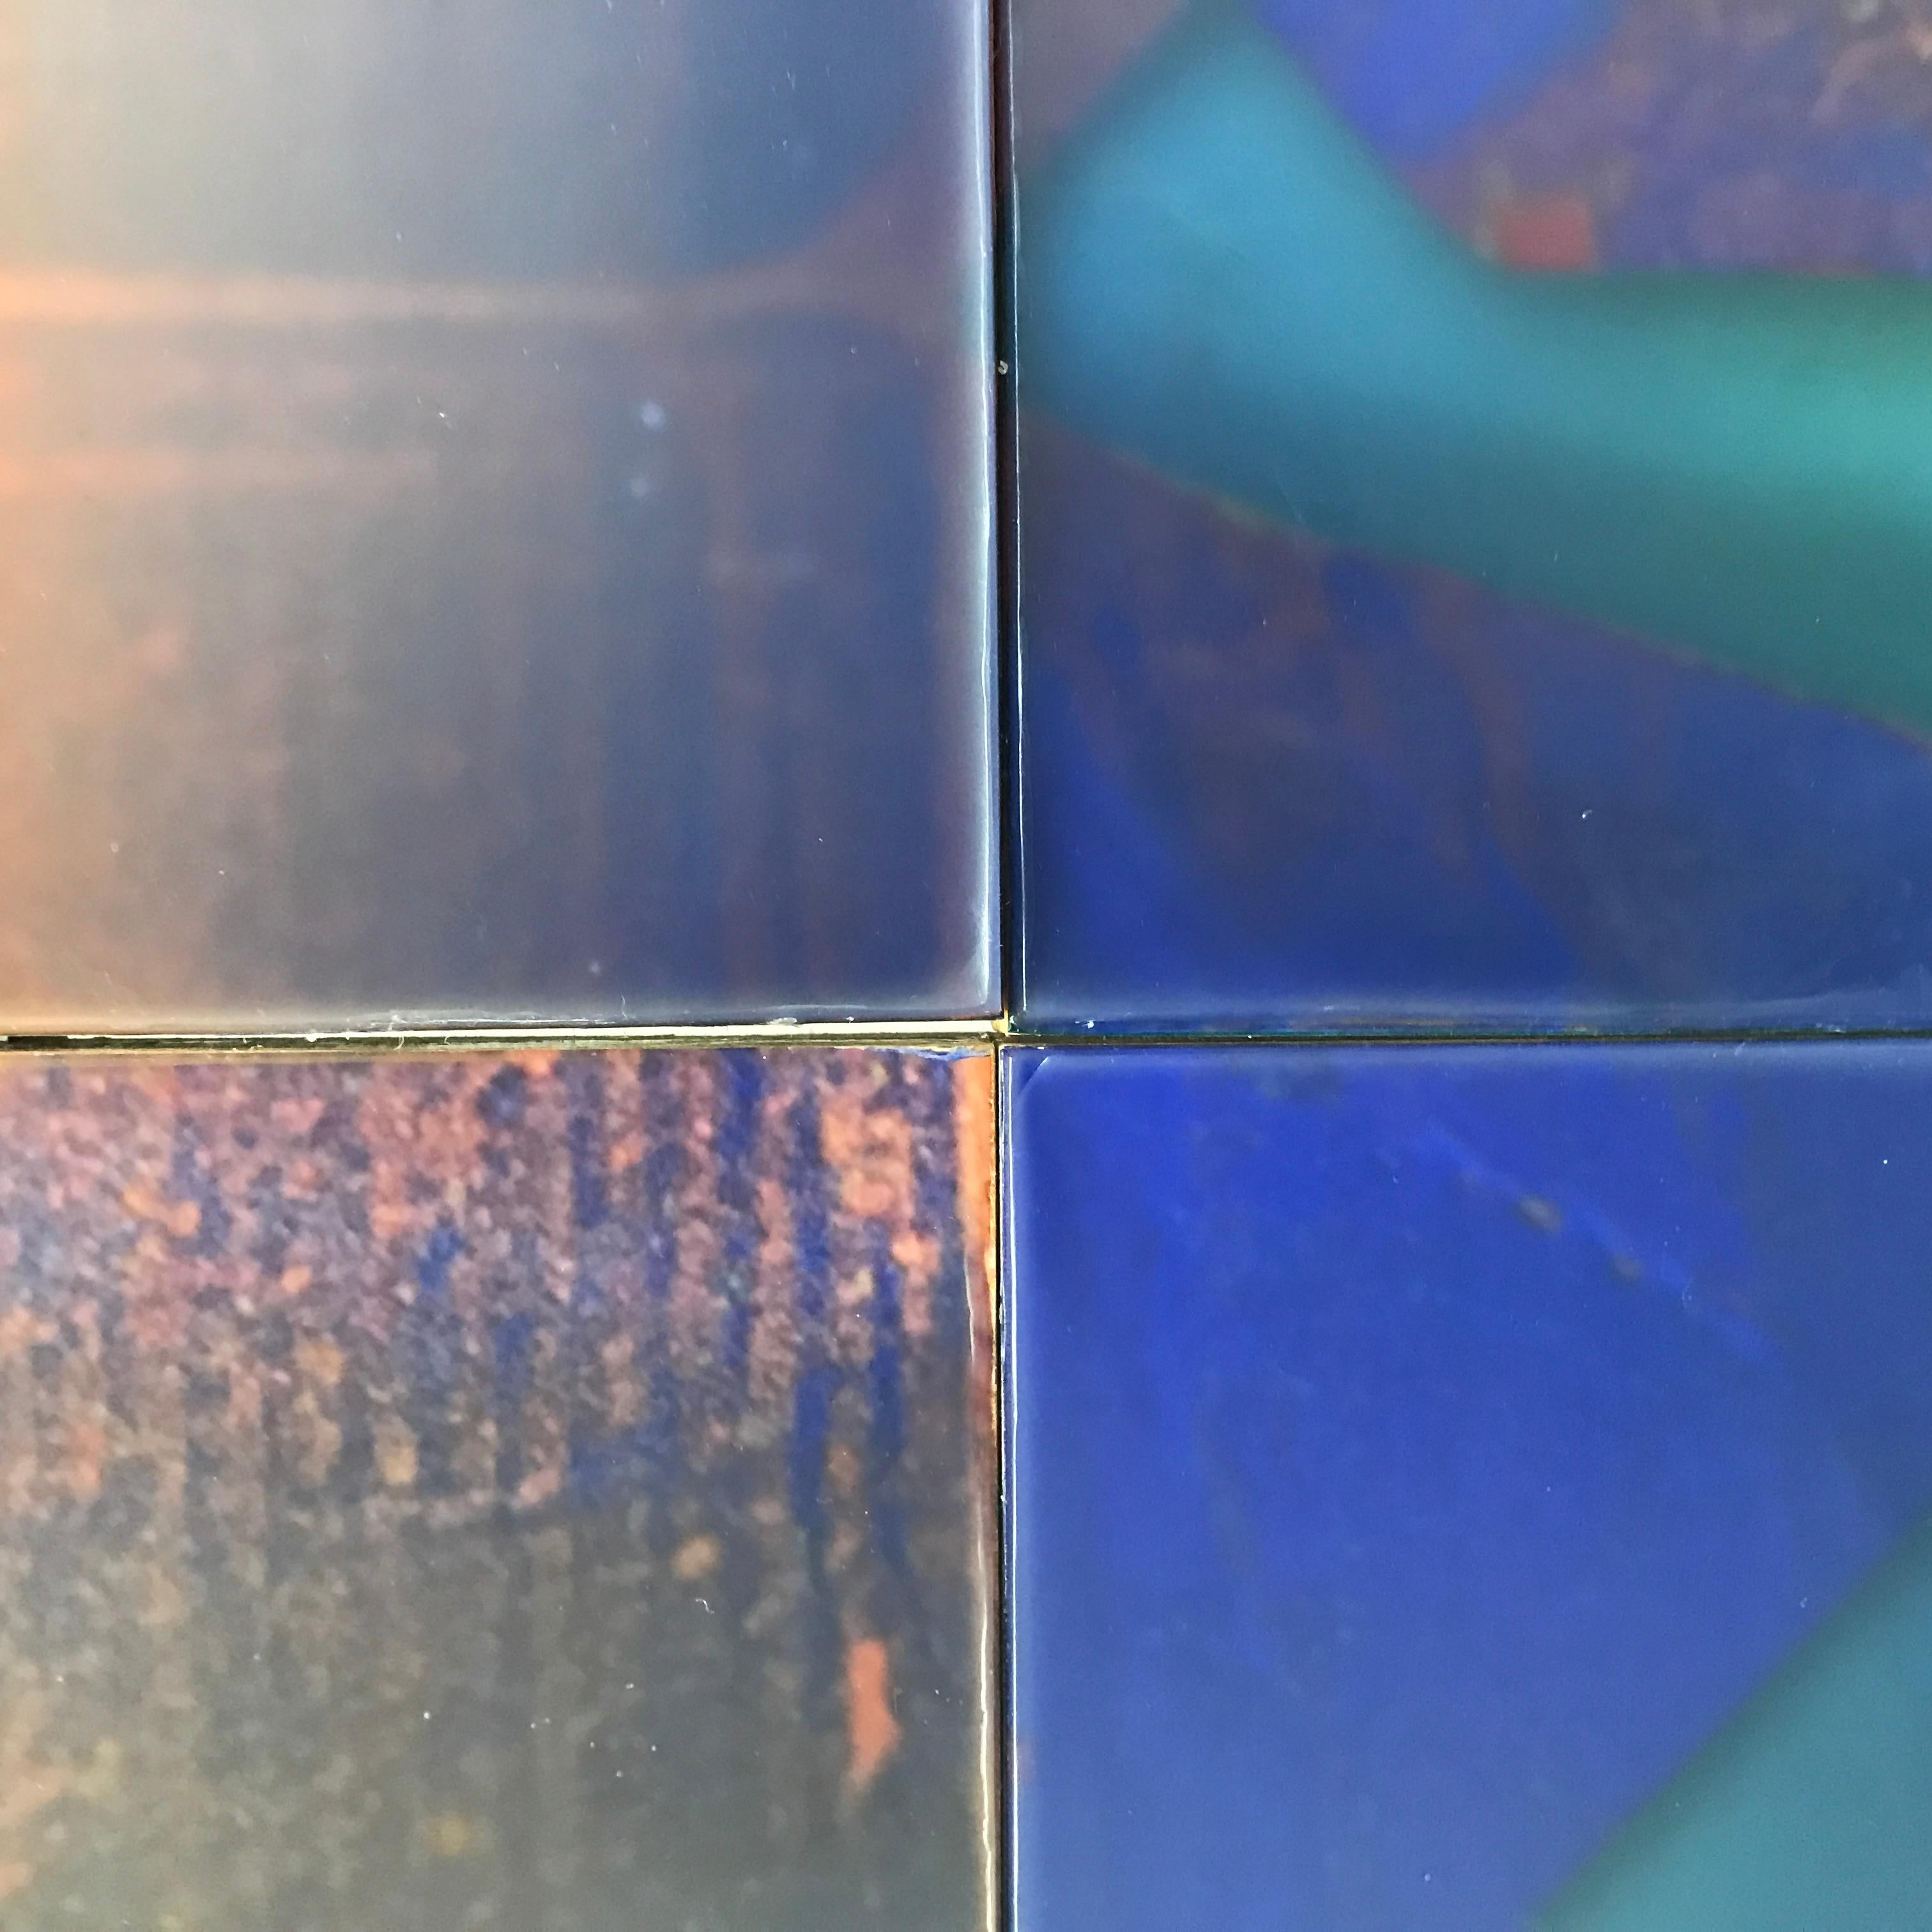 Des tons vifs d'orange, de violet, de bleu et de jaune d'or sont créés par le processus unique de cire coulée de Joanne Ungar dans cette installation murale à plusieurs panneaux.  48 